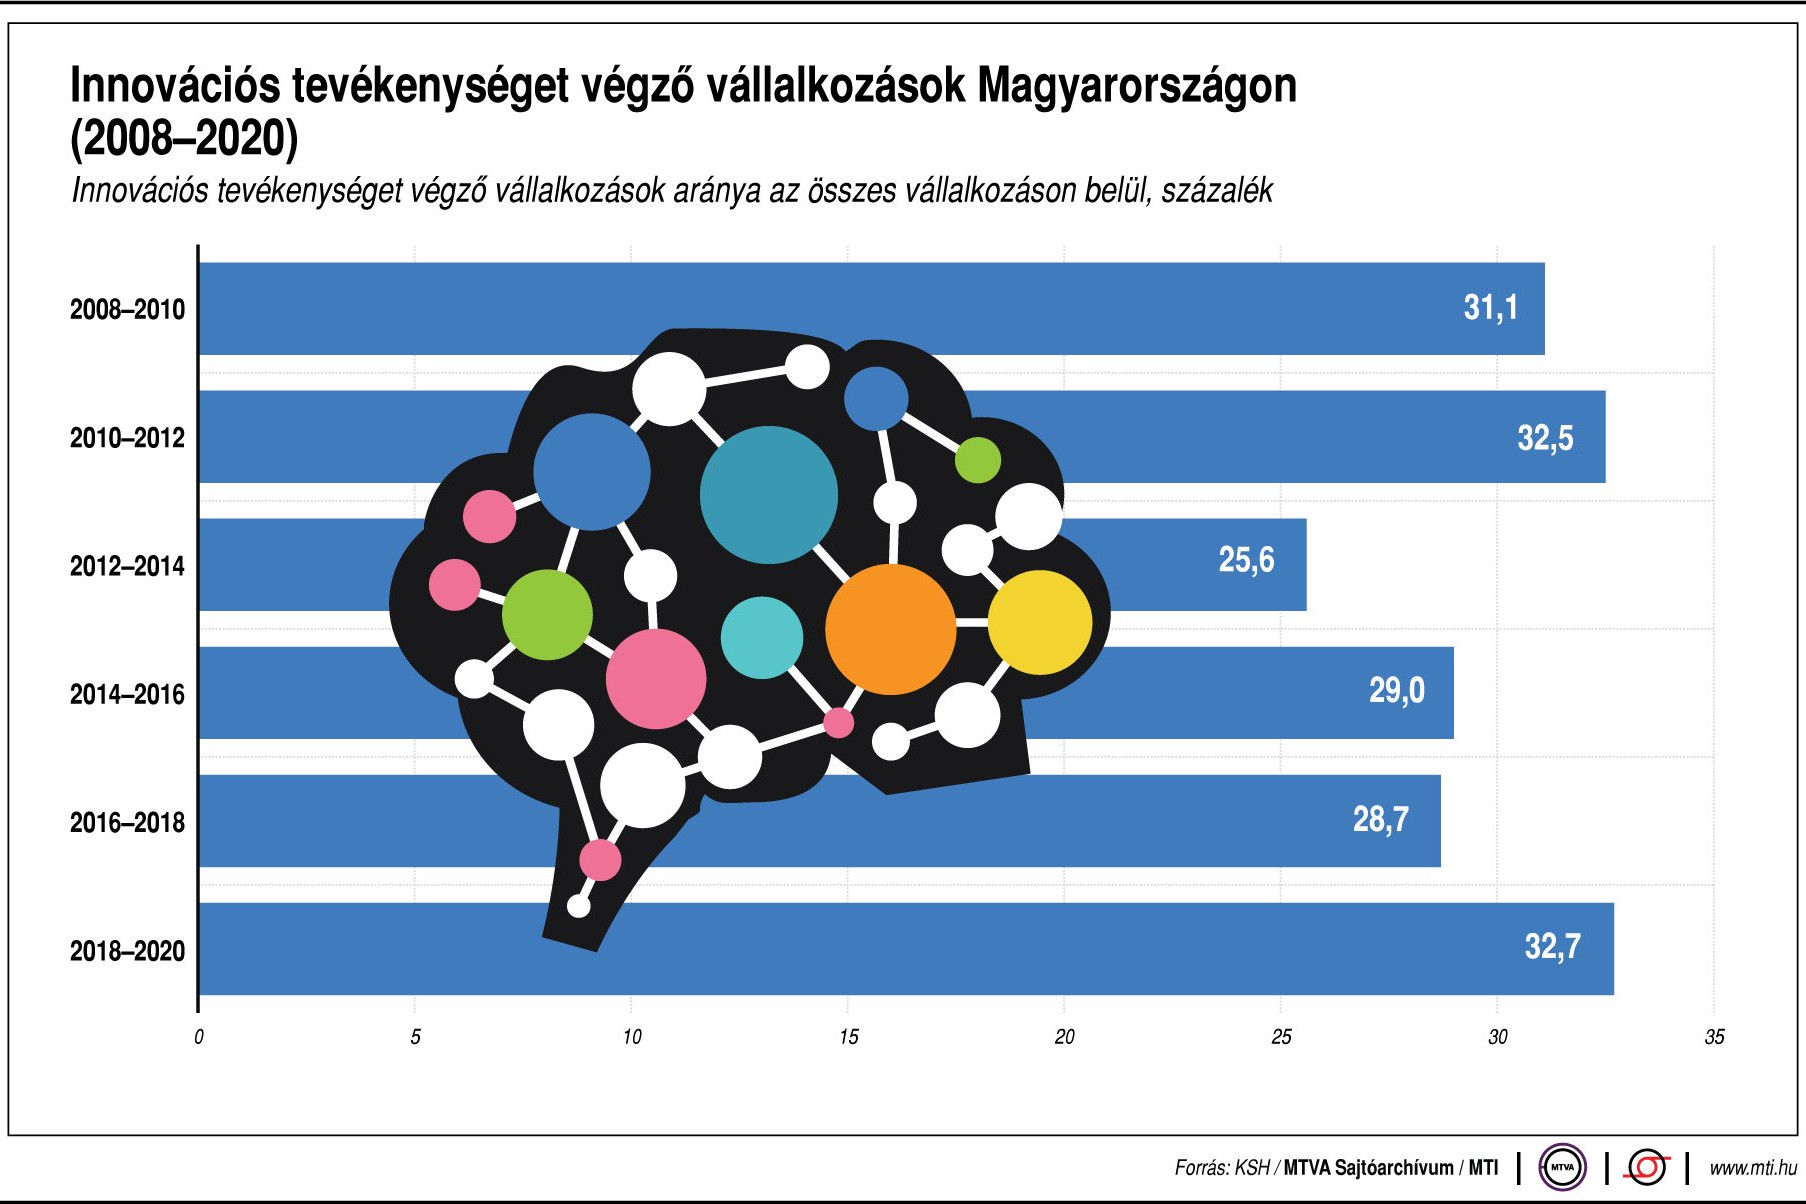 Innovációs tevékenységet végző vállalkozások Magyarországon (2008-2020)